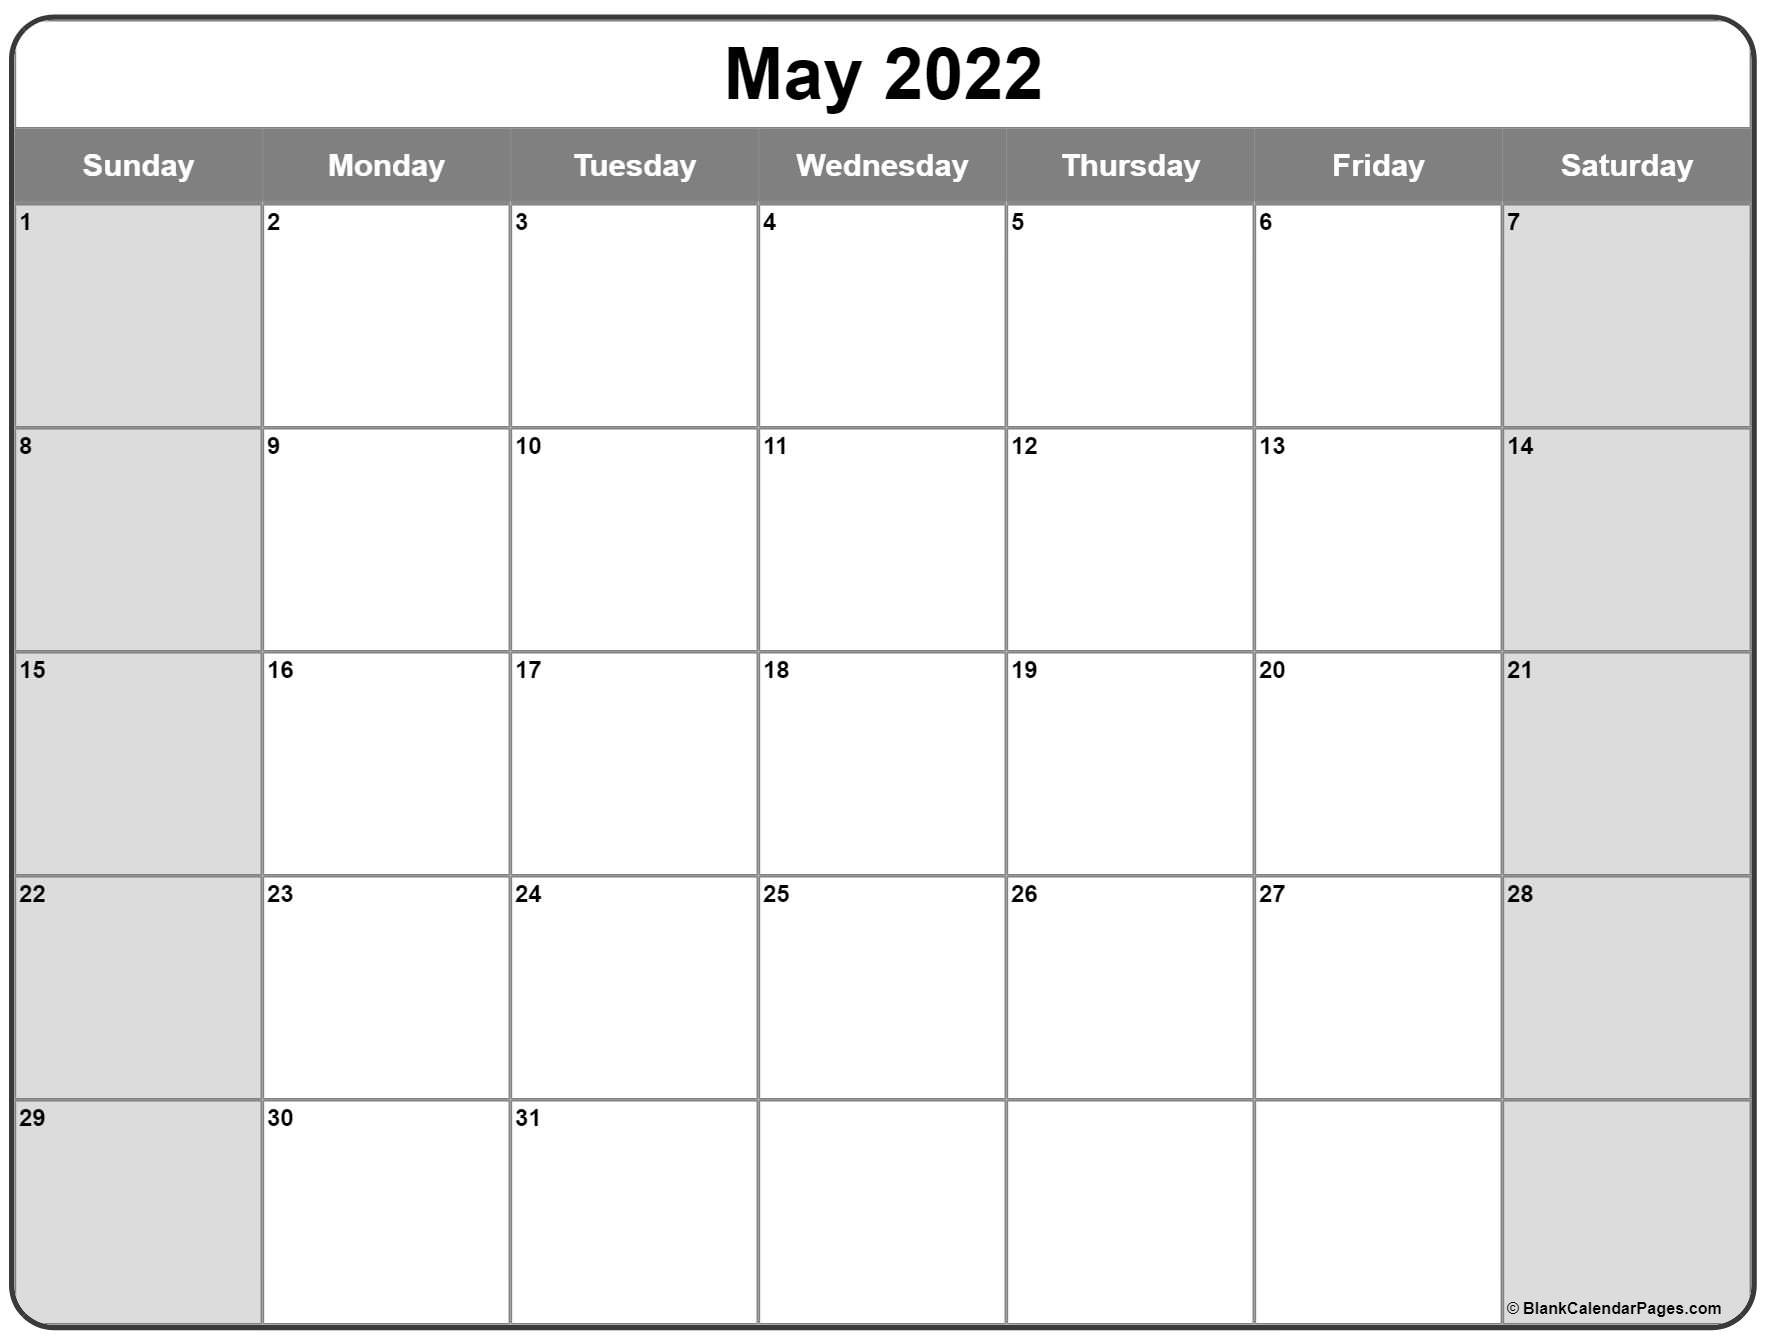 May 2022 calendar